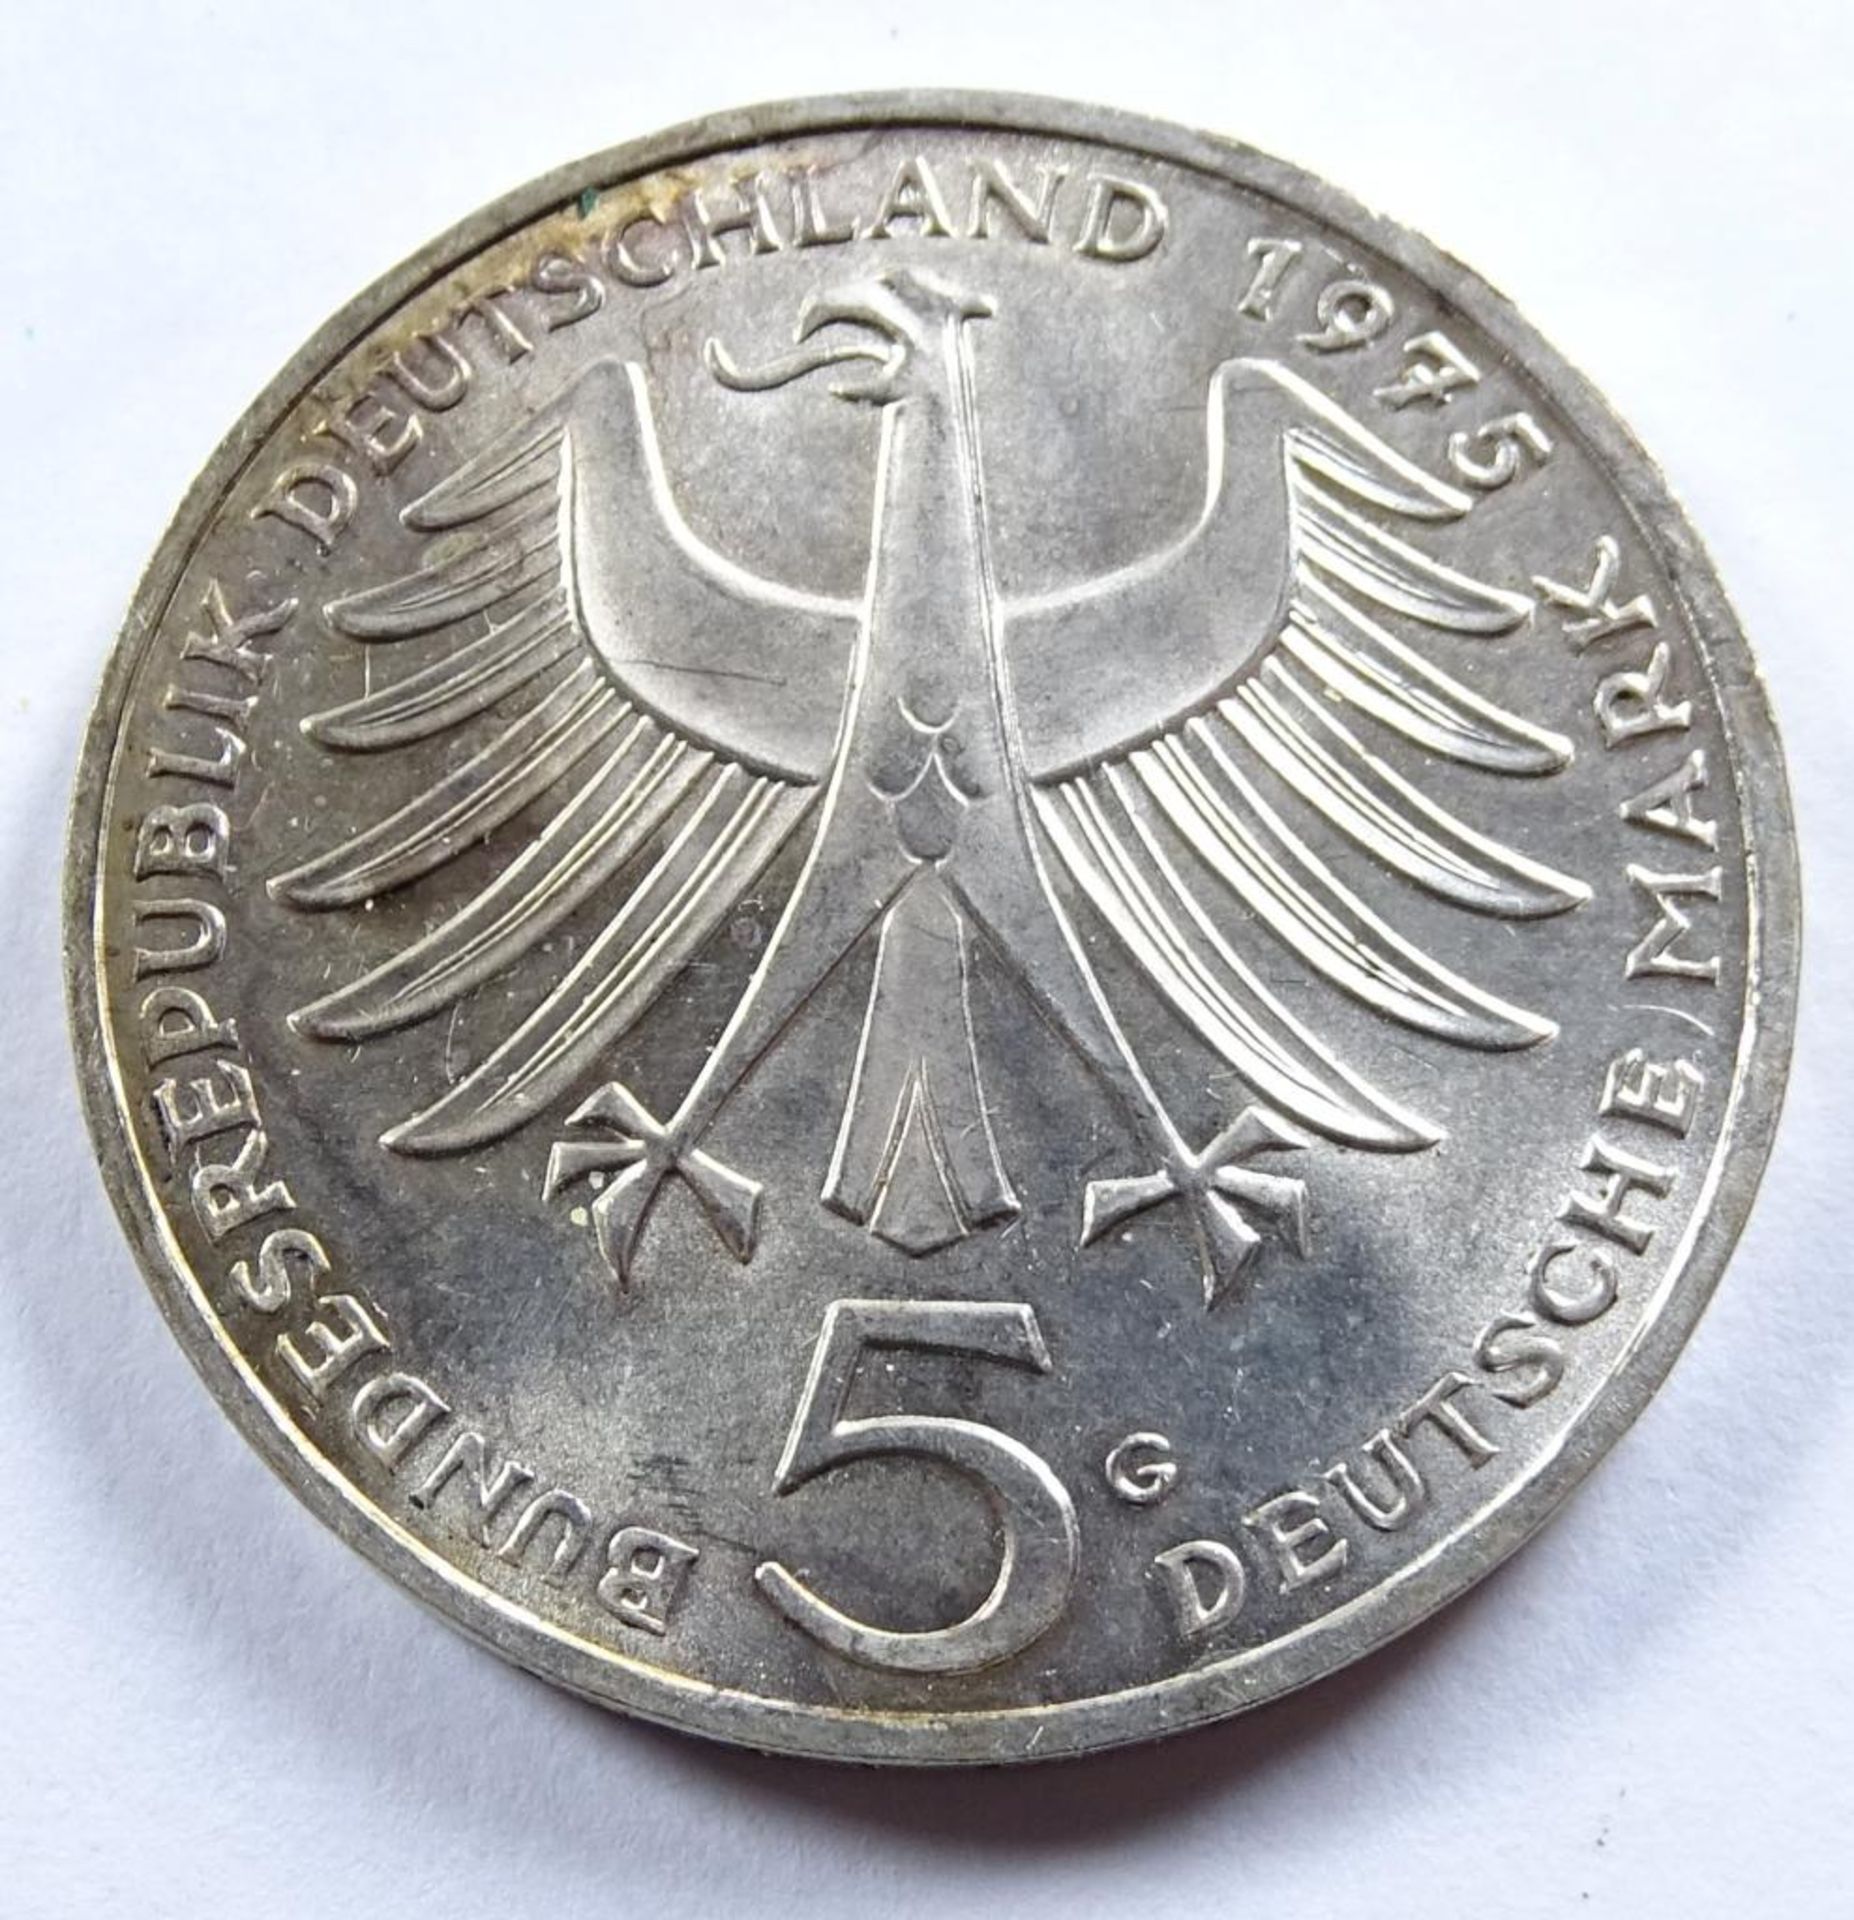 5 DM-Deutsche Mark, 1975 G